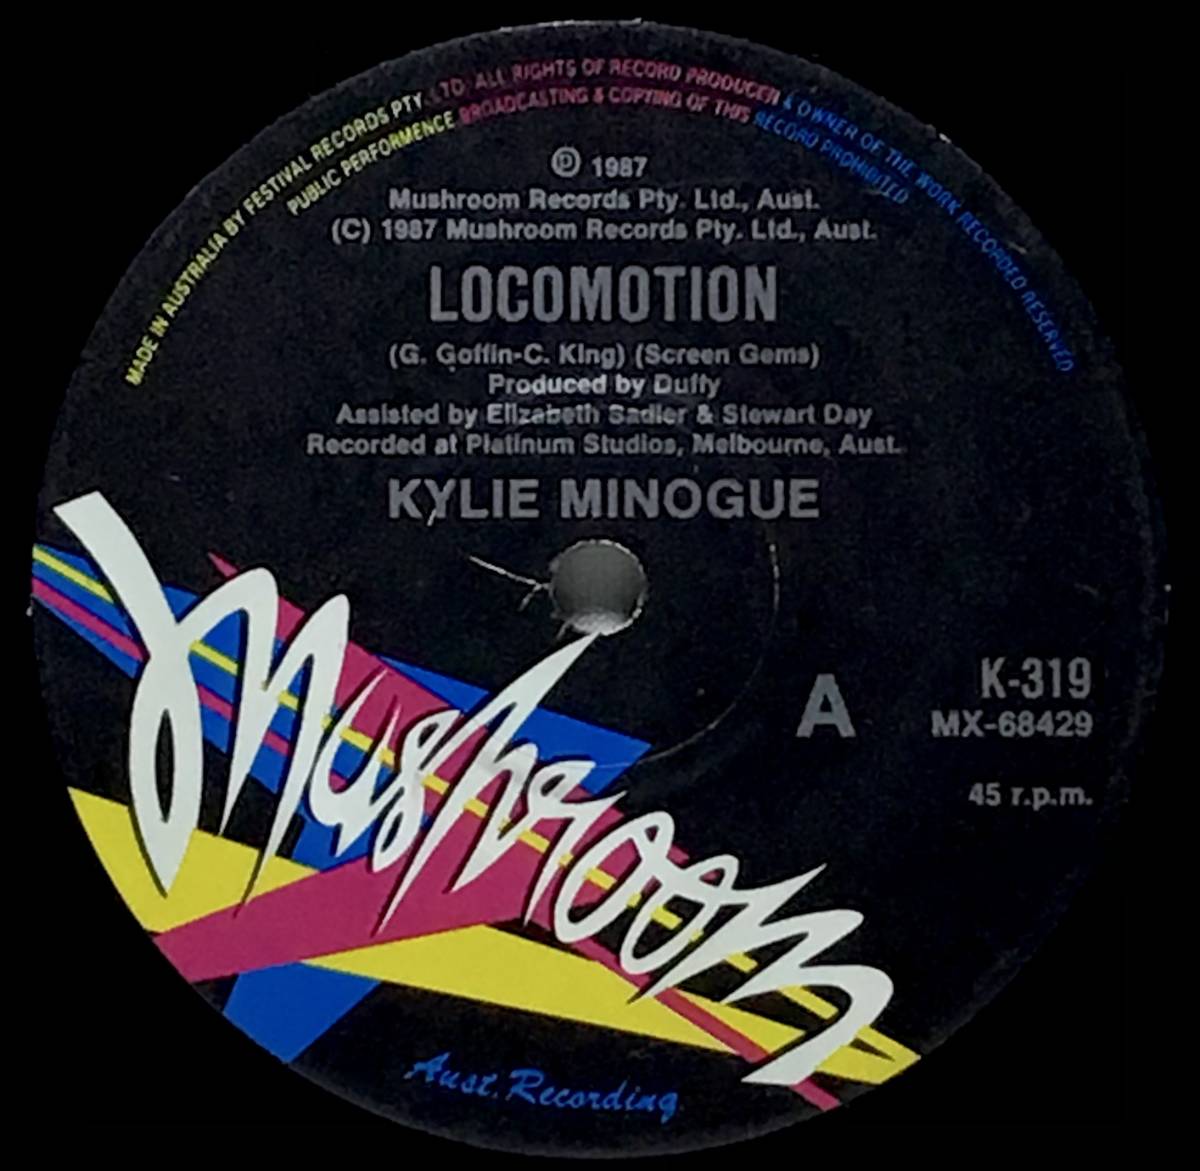 【蘭7】 KYLIE MINOGUE カイリーミノーグ / THE LOCOMOTION / GLAD TO BE ALIVE / 1987 オーストラリア盤 7インチレコード EP 45 EUROBEAT_画像4